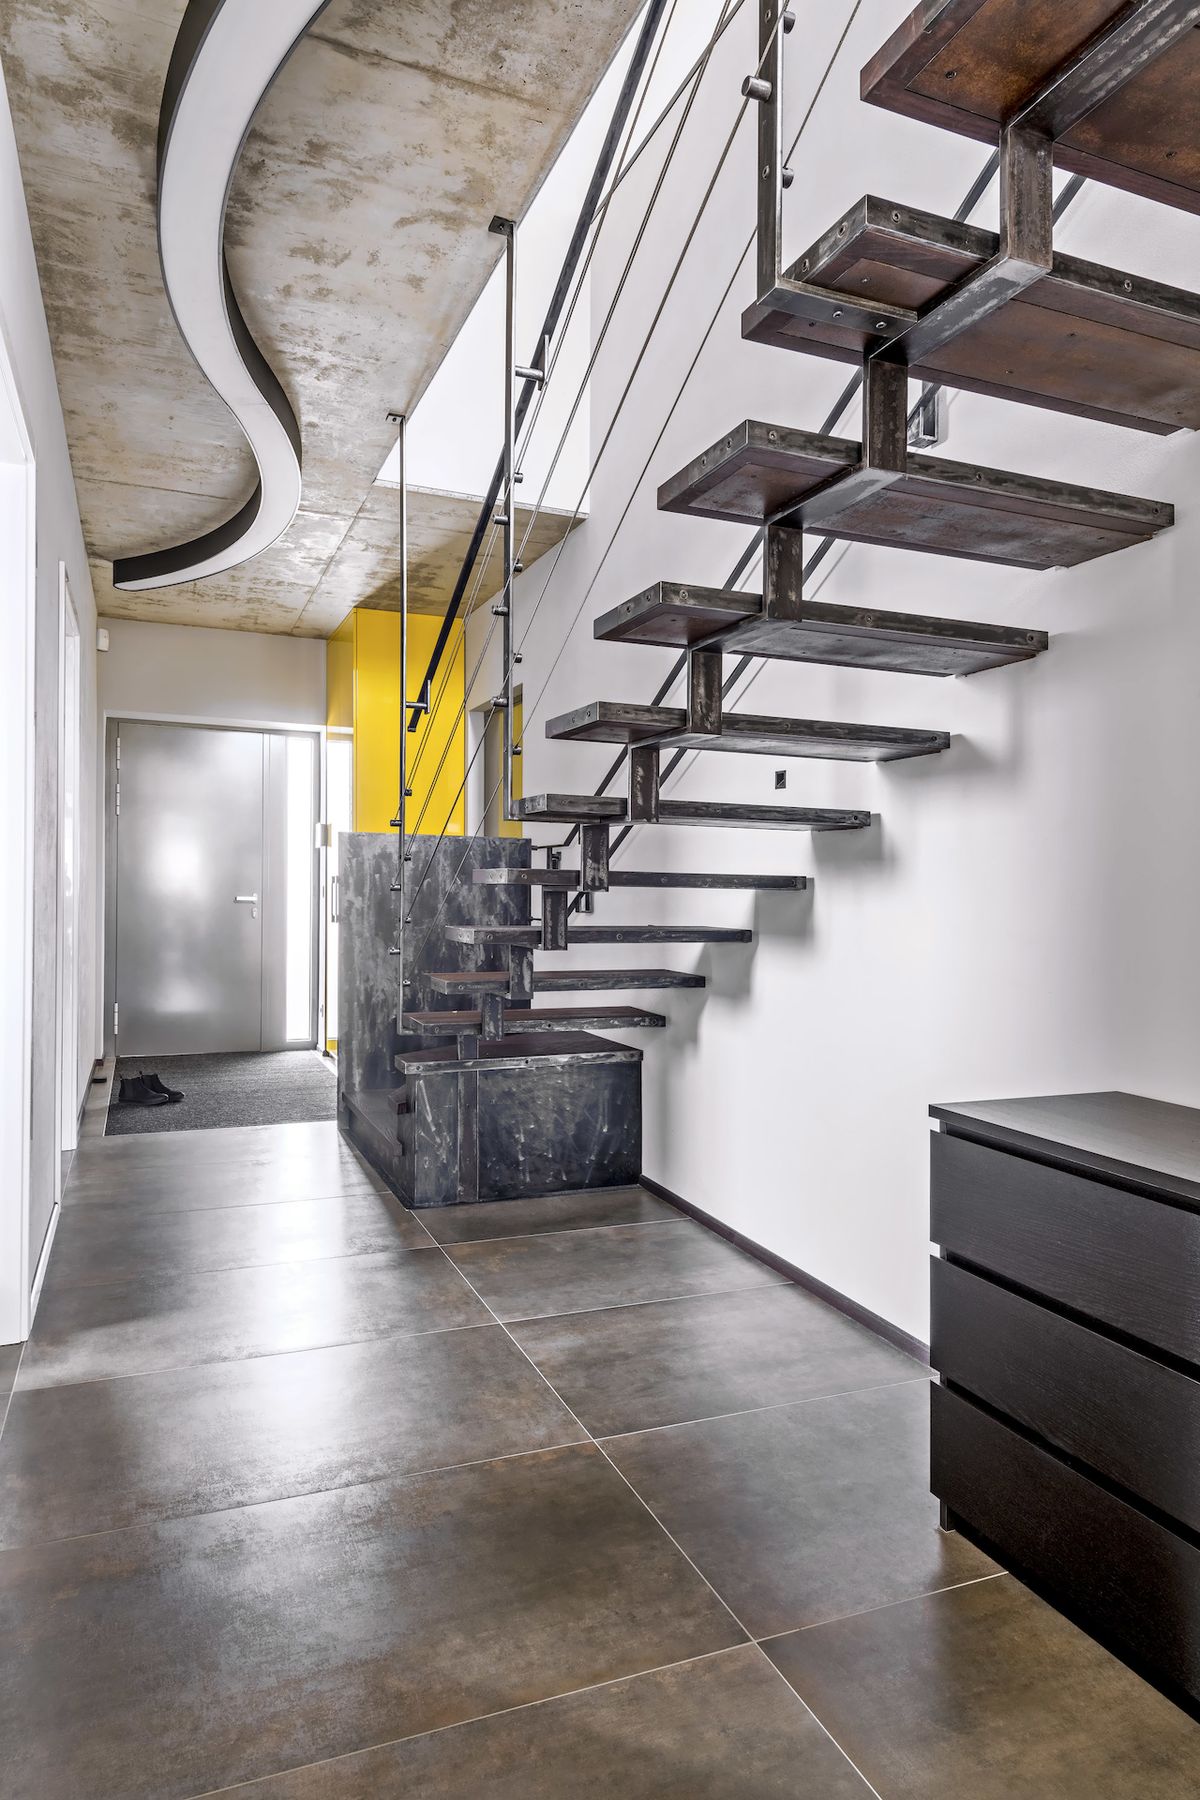 Nápadný akcent chodby s industriálně laděným schodištěm, vyrobeným místním uměleckým kovářem, tvoří kontrastní žlutá skříň (Hanák nábytek) lakovaná do vysokého lesku.